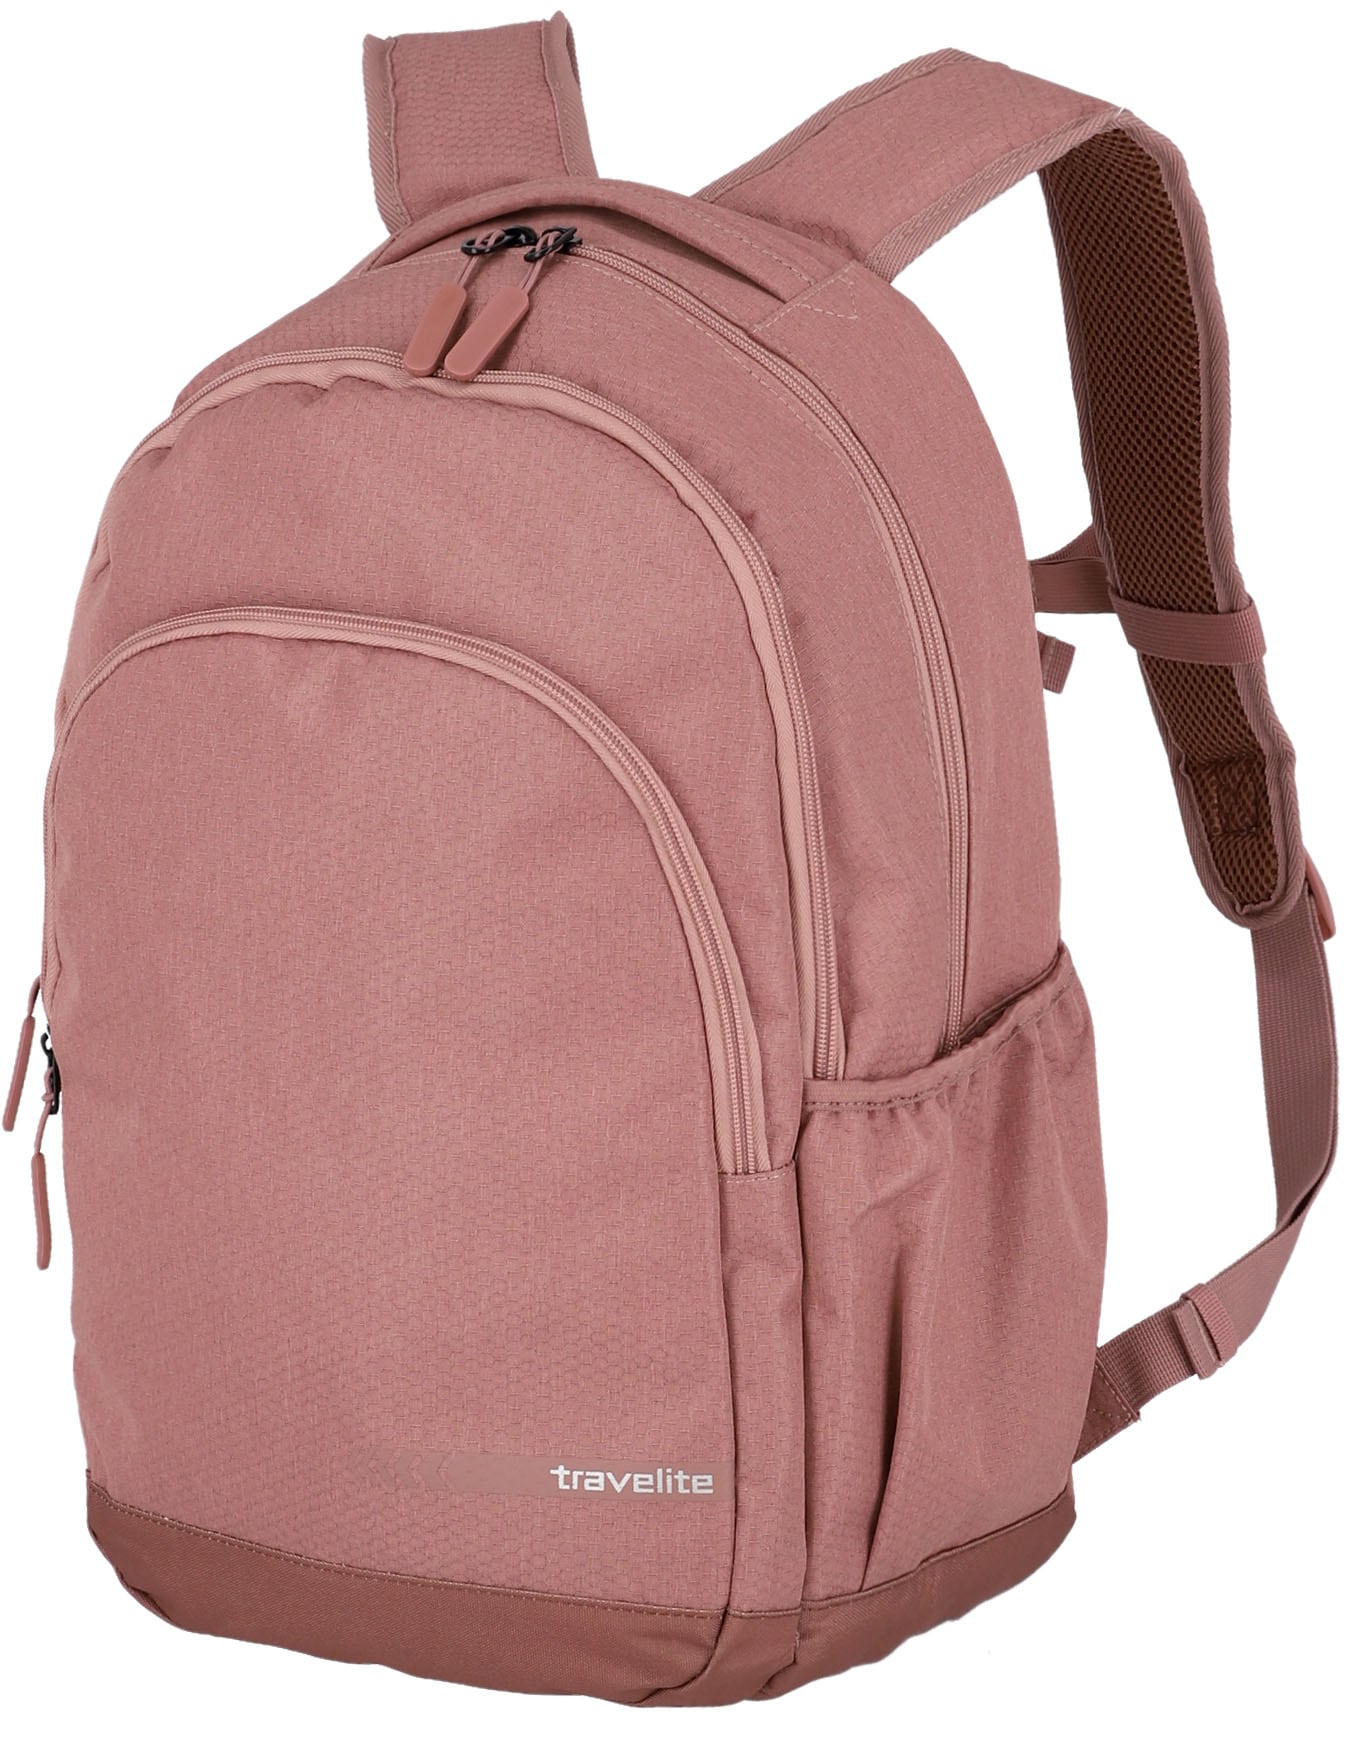 travelite Laptoprucksack »Kick Off L, 45 cm, rosé«, Arbeitsrucksack Schulrucksack Streetpack mit 15,6-Zoll Laptopfach